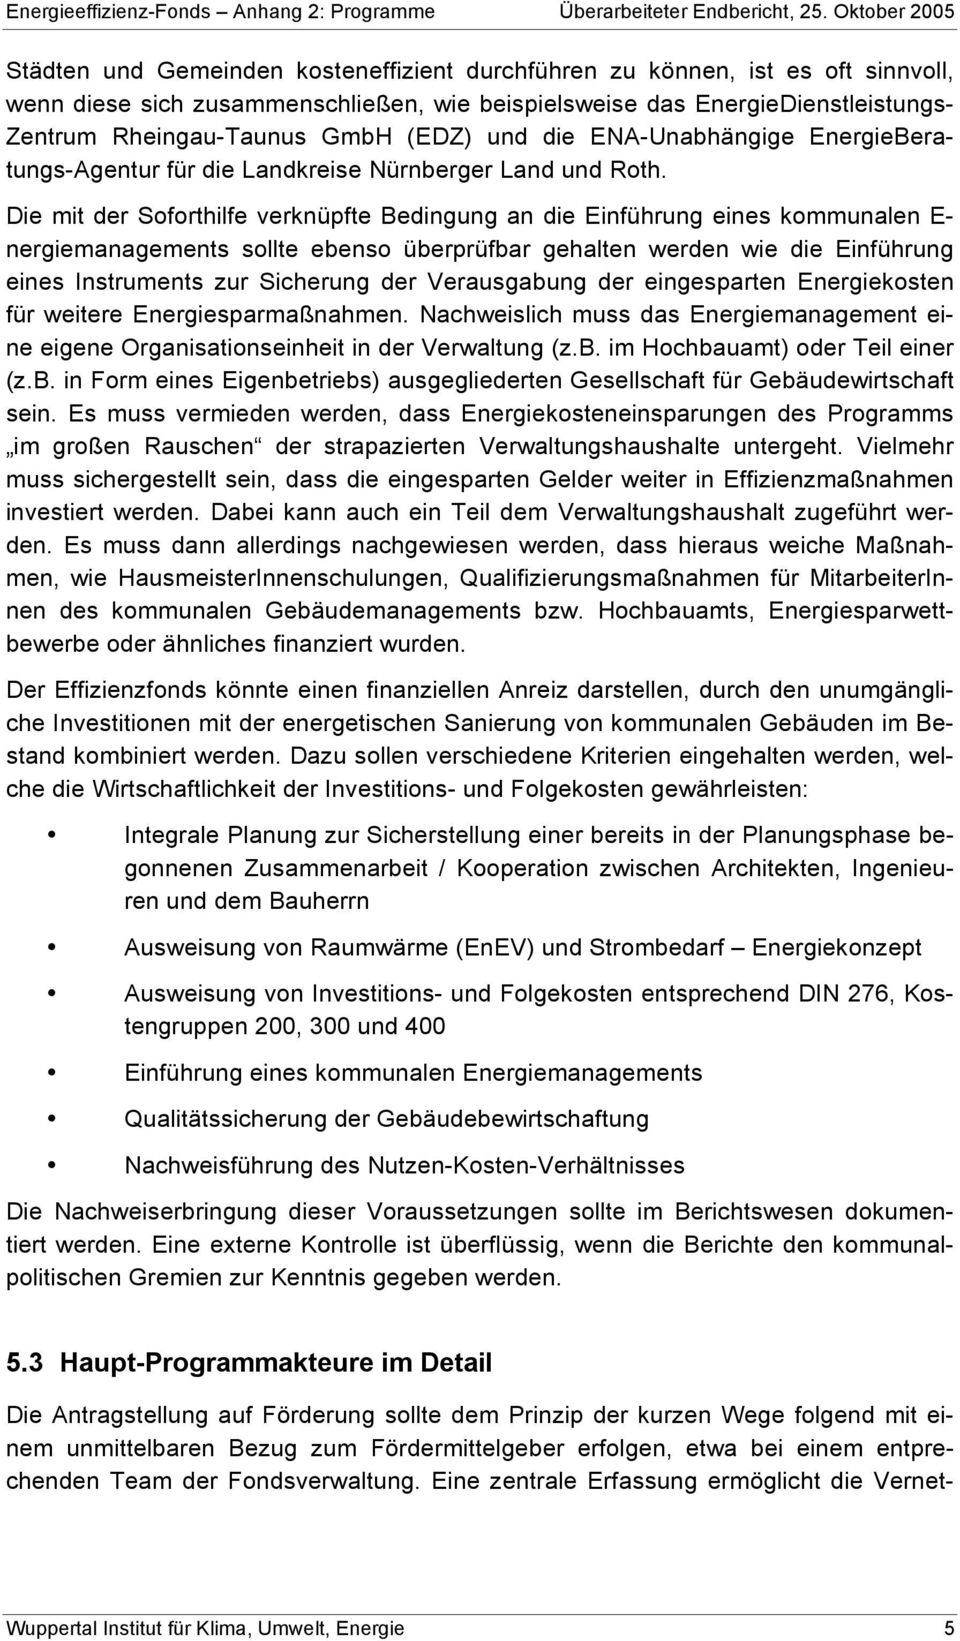 Rheingau-Taunus GmbH (EDZ) und die ENA-Unabhängige EnergieBeratungs-Agentur für die Landkreise Nürnberger Land und Roth.